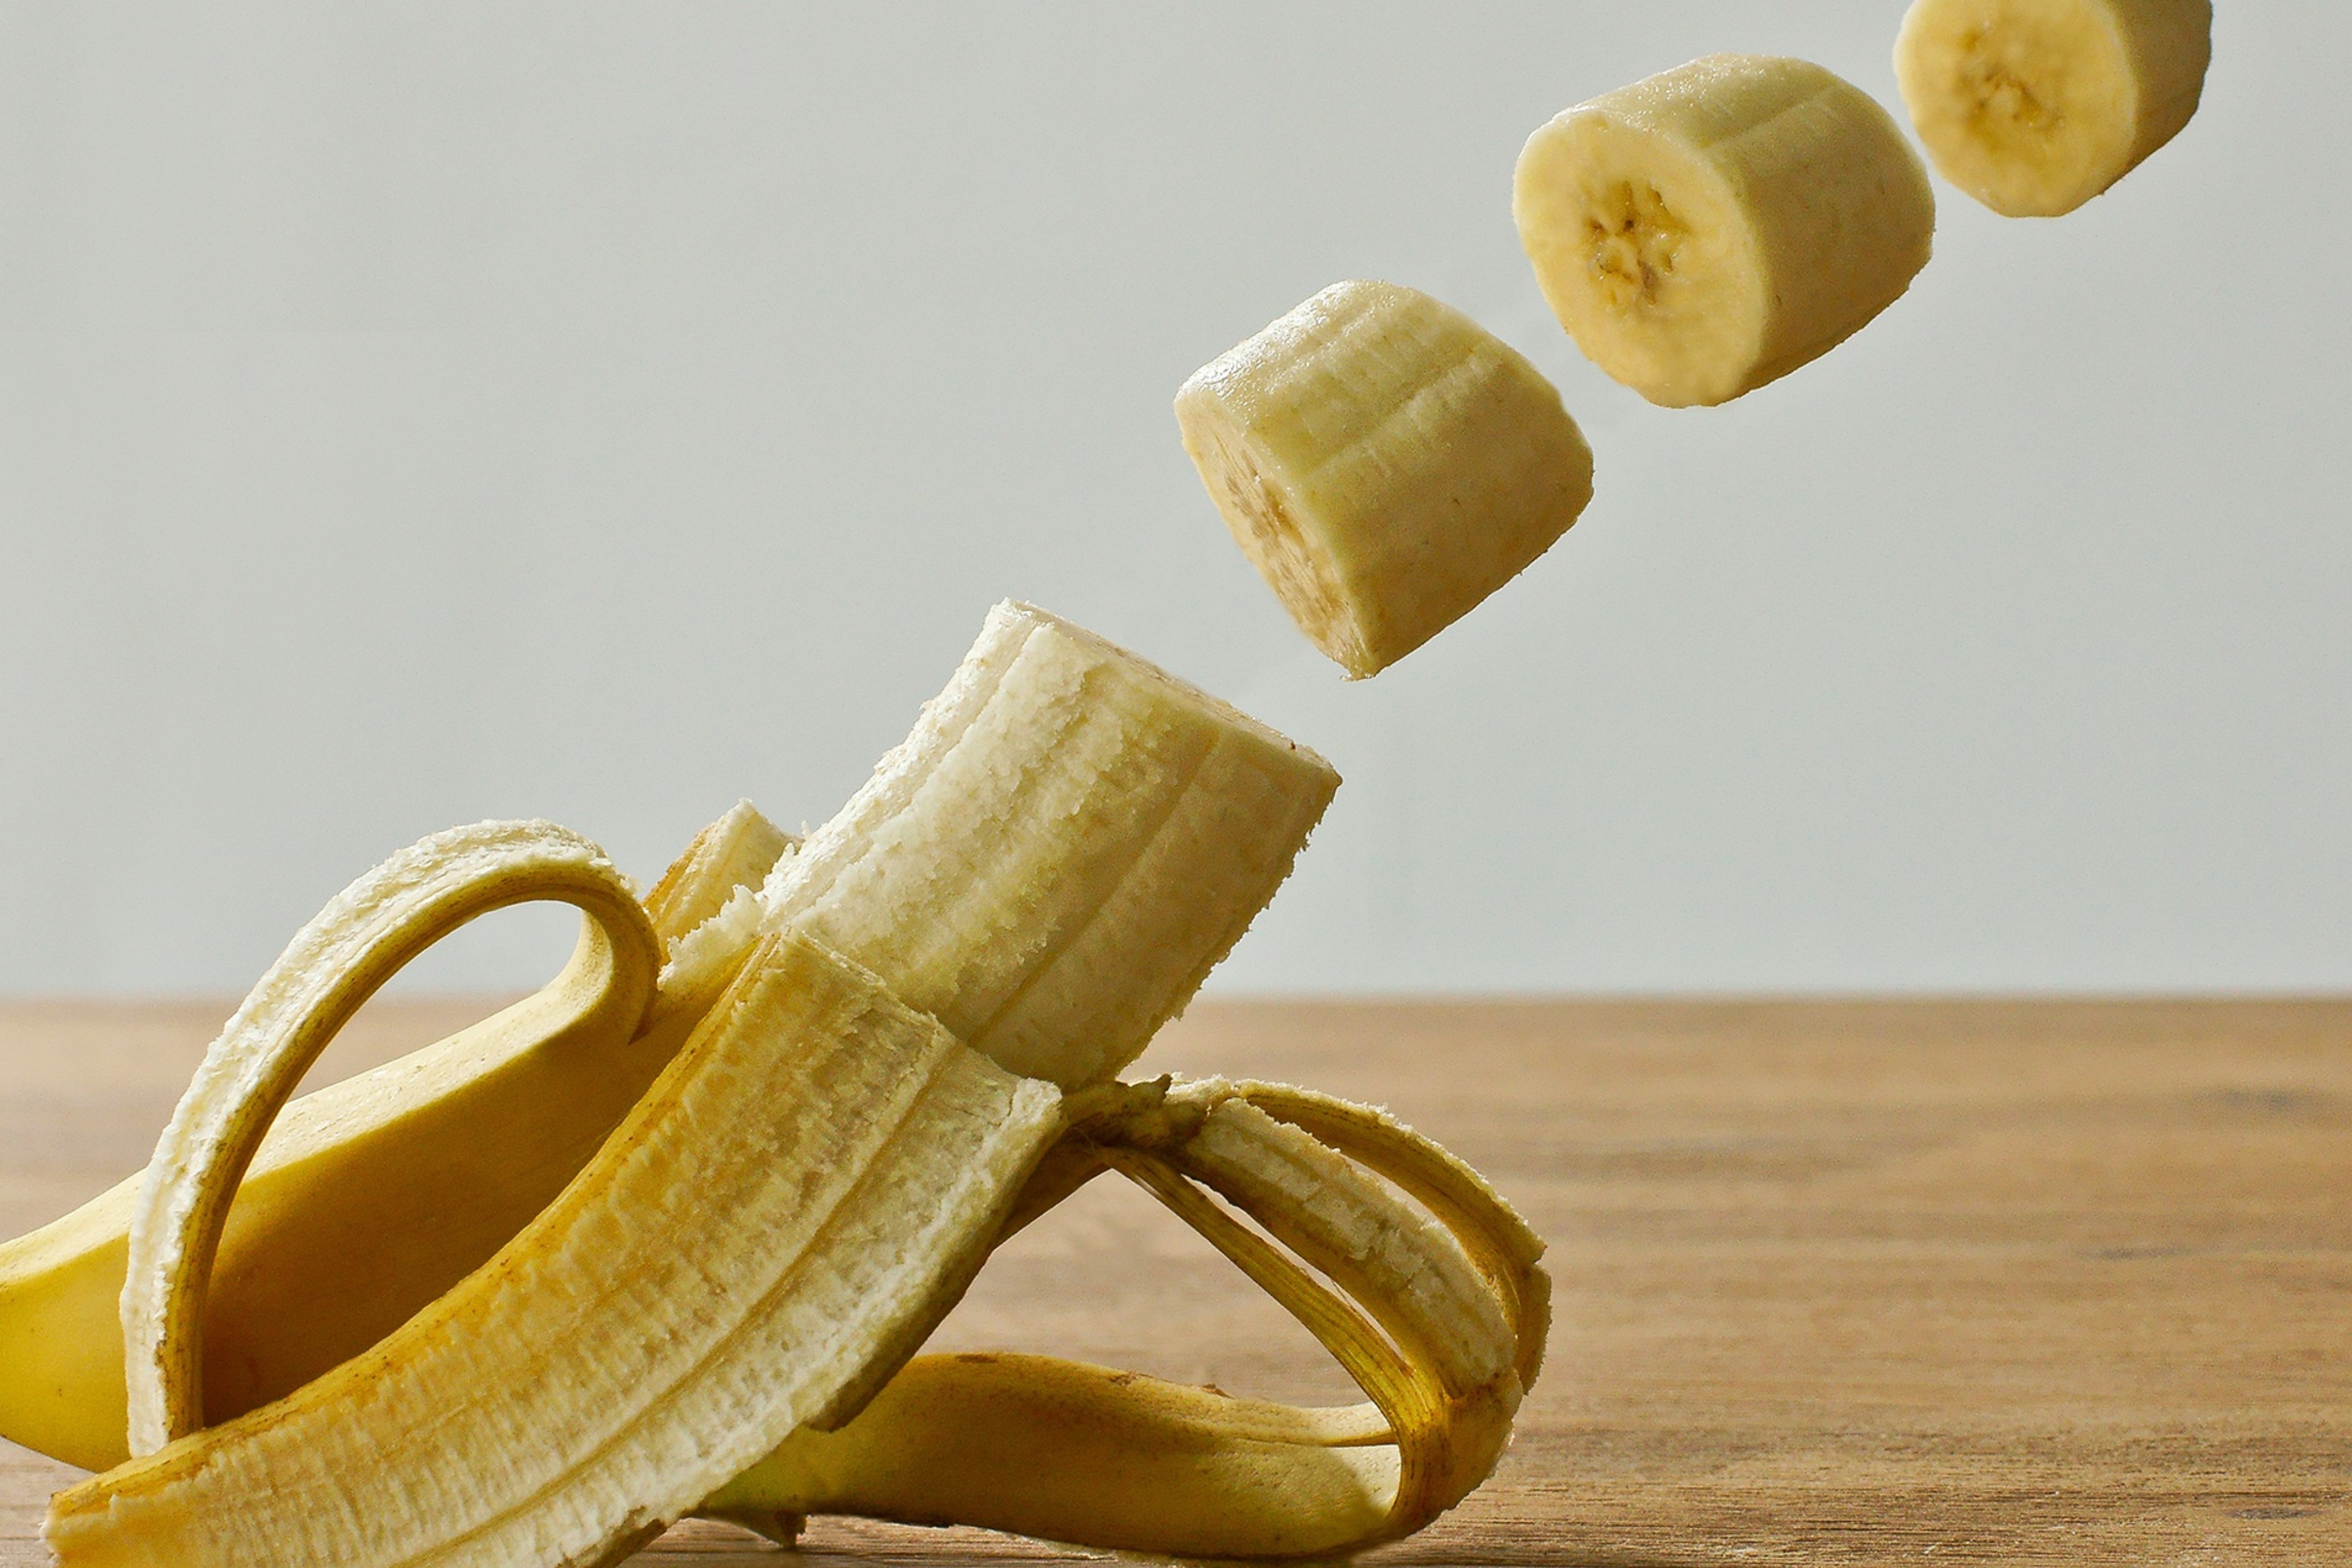 Μπορείς να απολαύσεις chips μπανάνας ακόμα κι αν κάνεις διατροφή - Δες πώς